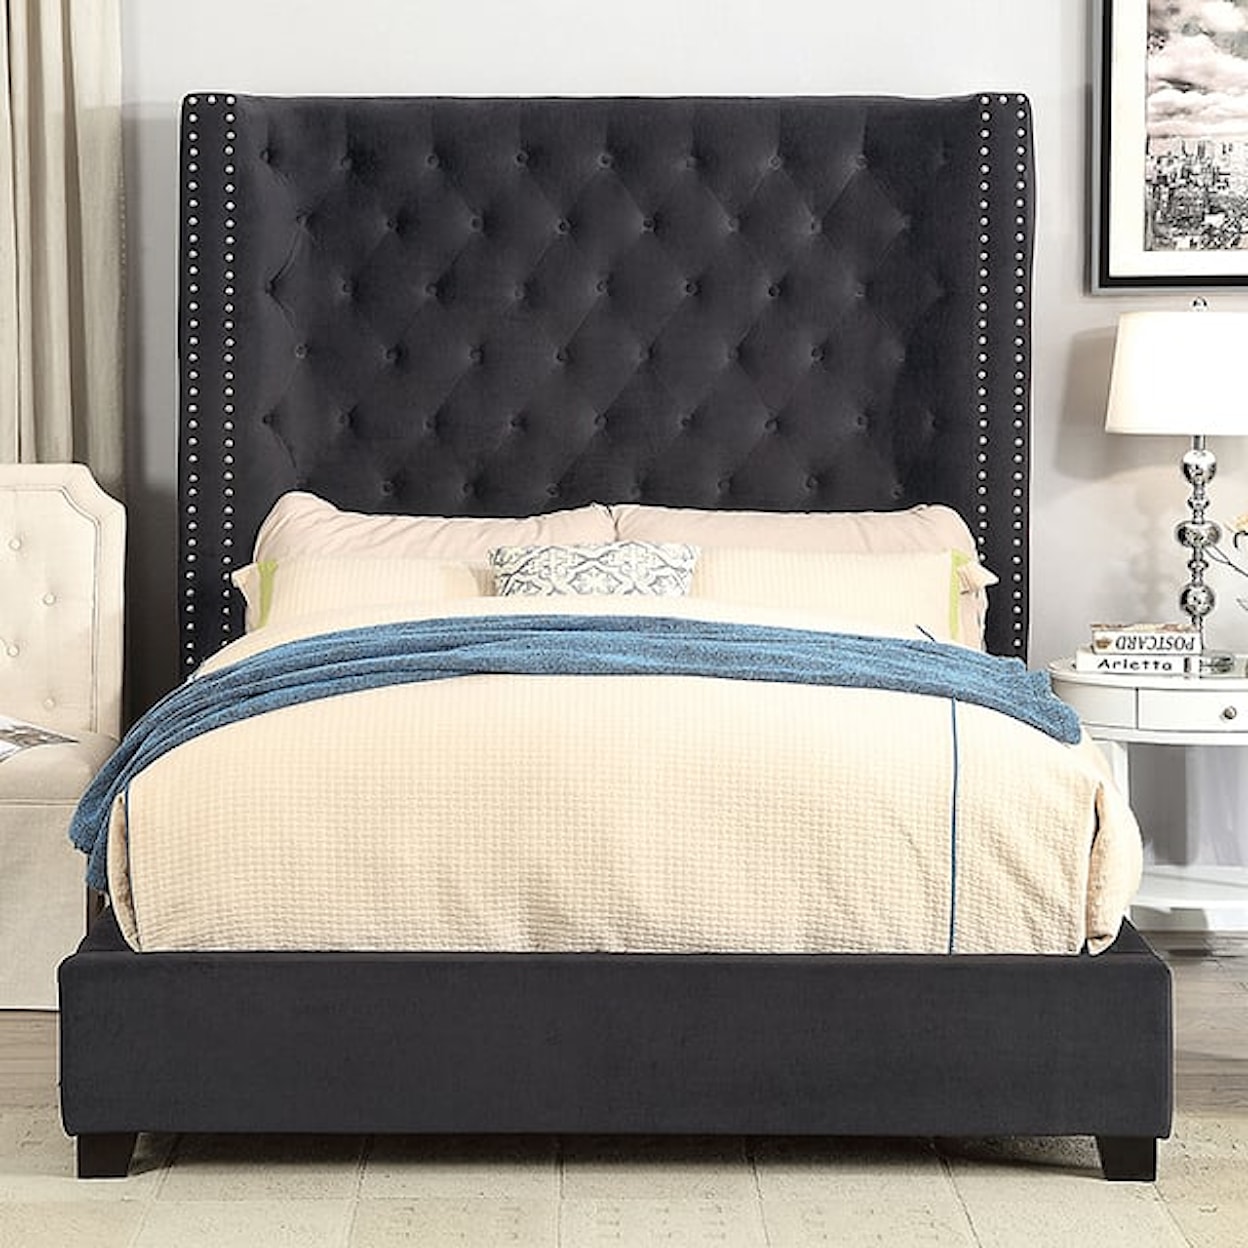 Furniture of America Rosabelle King Upholstered Bed